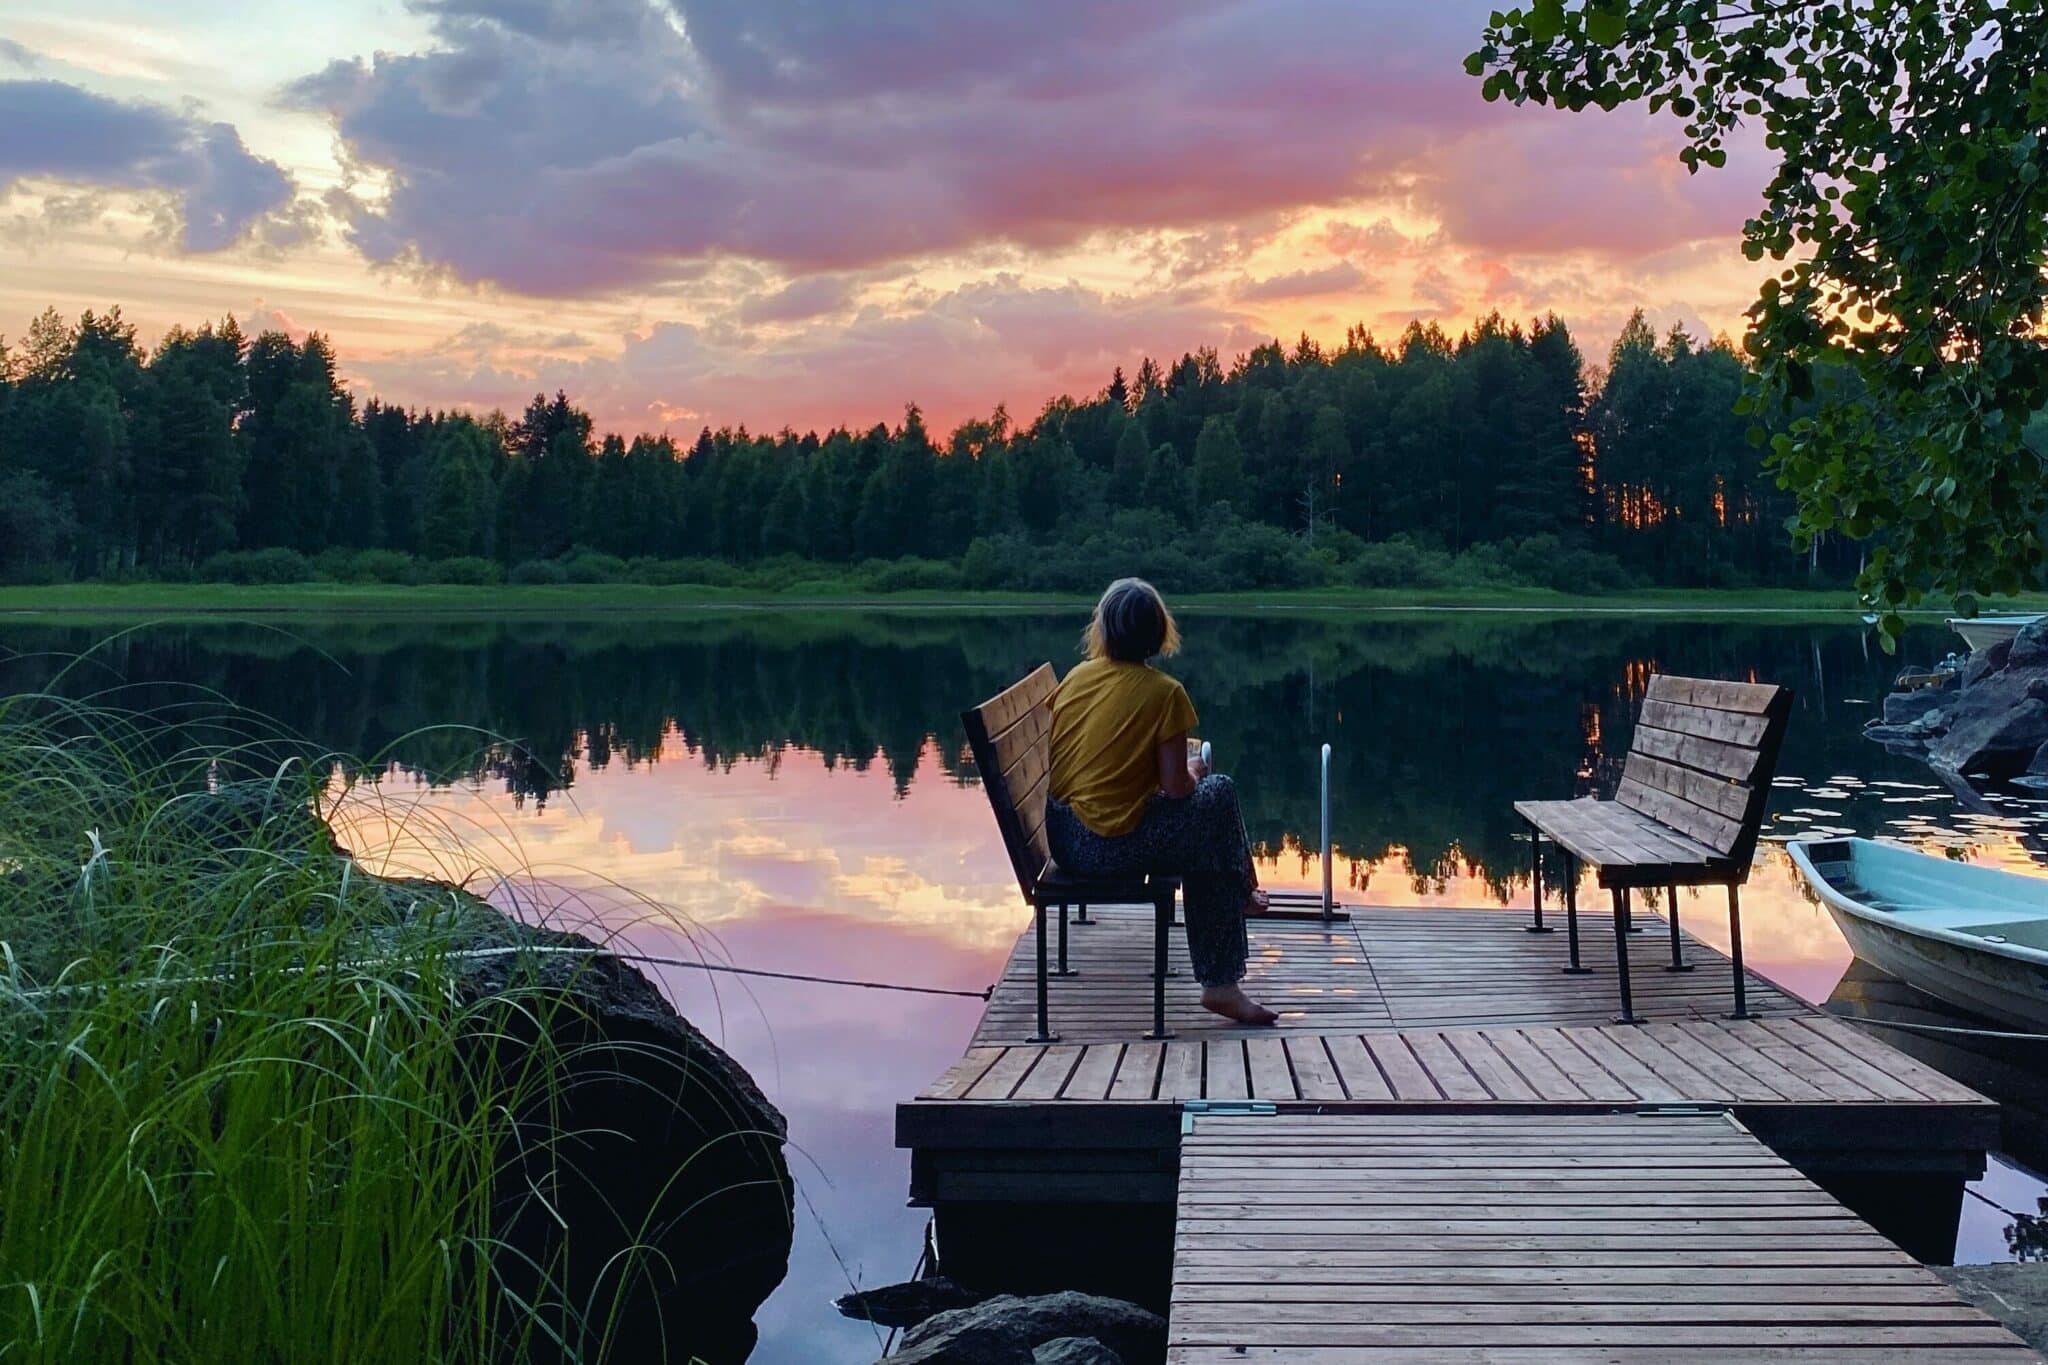 L'immagine mostra una donna seduta su una panchina su un molo. Sullo sfondo si vede un lago e sopra di esso un tramonto color rosa.